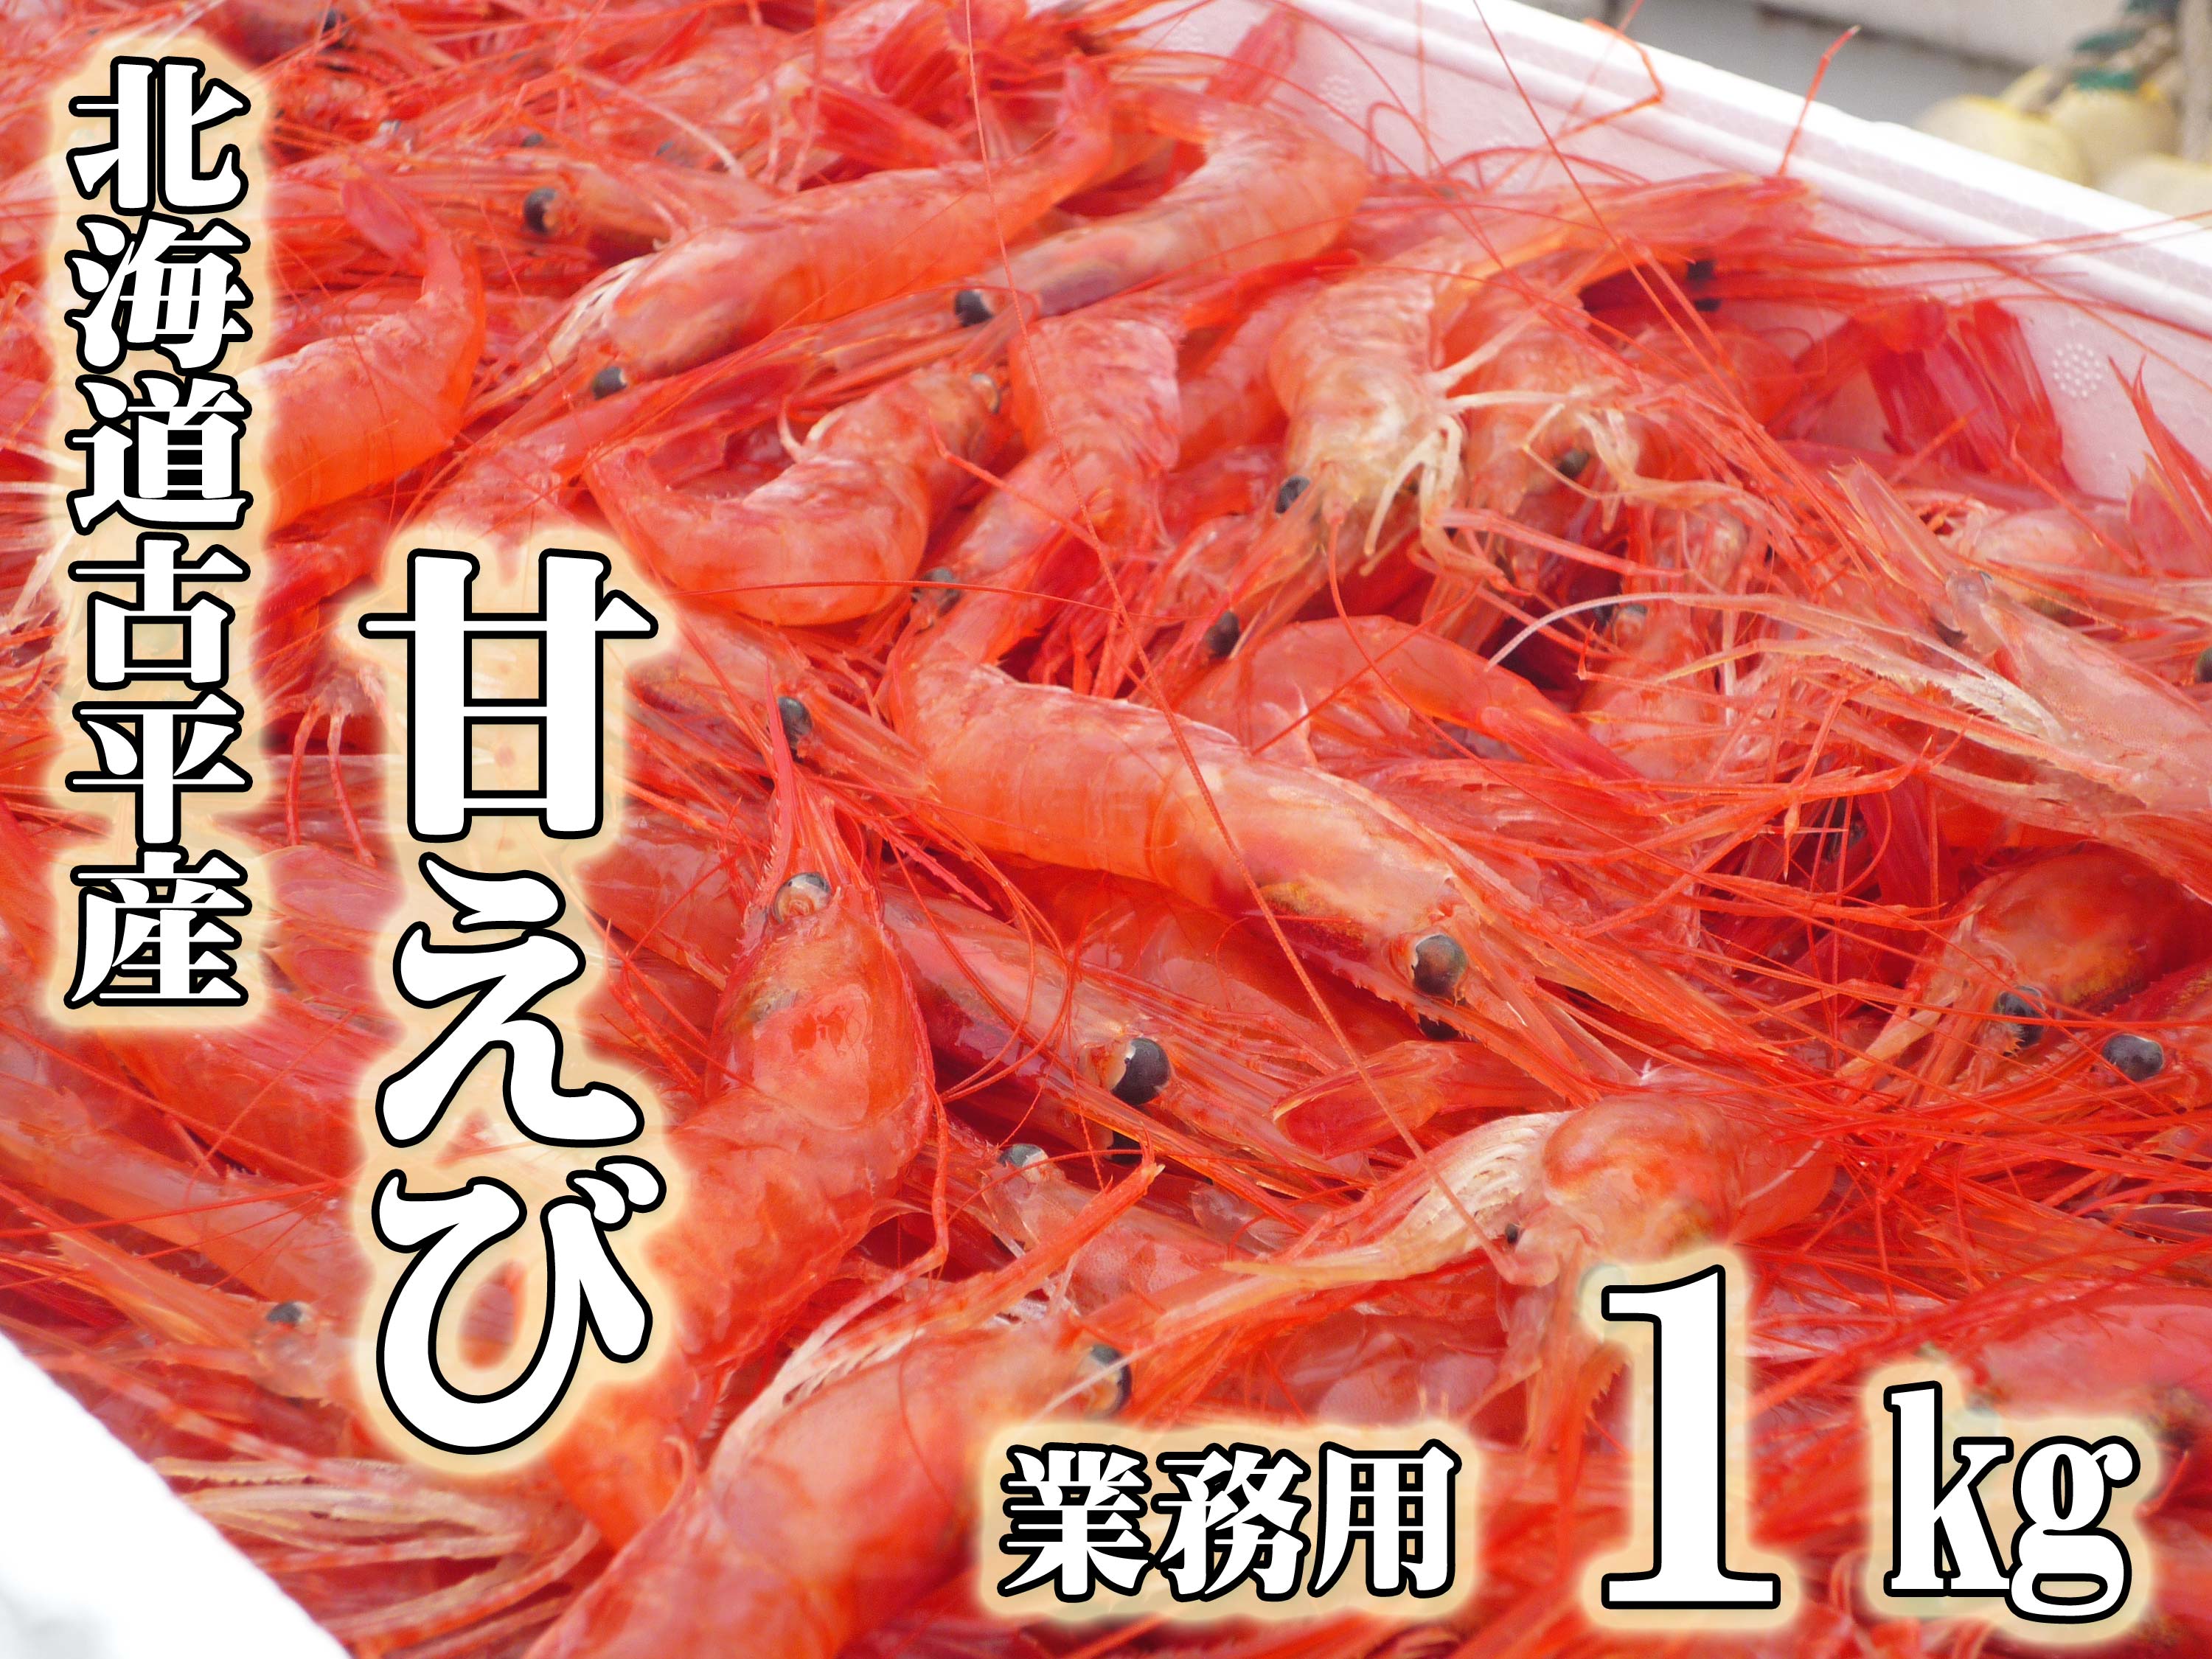 [業務用]北海道古平産 漁師直送! 甘えび 1kg